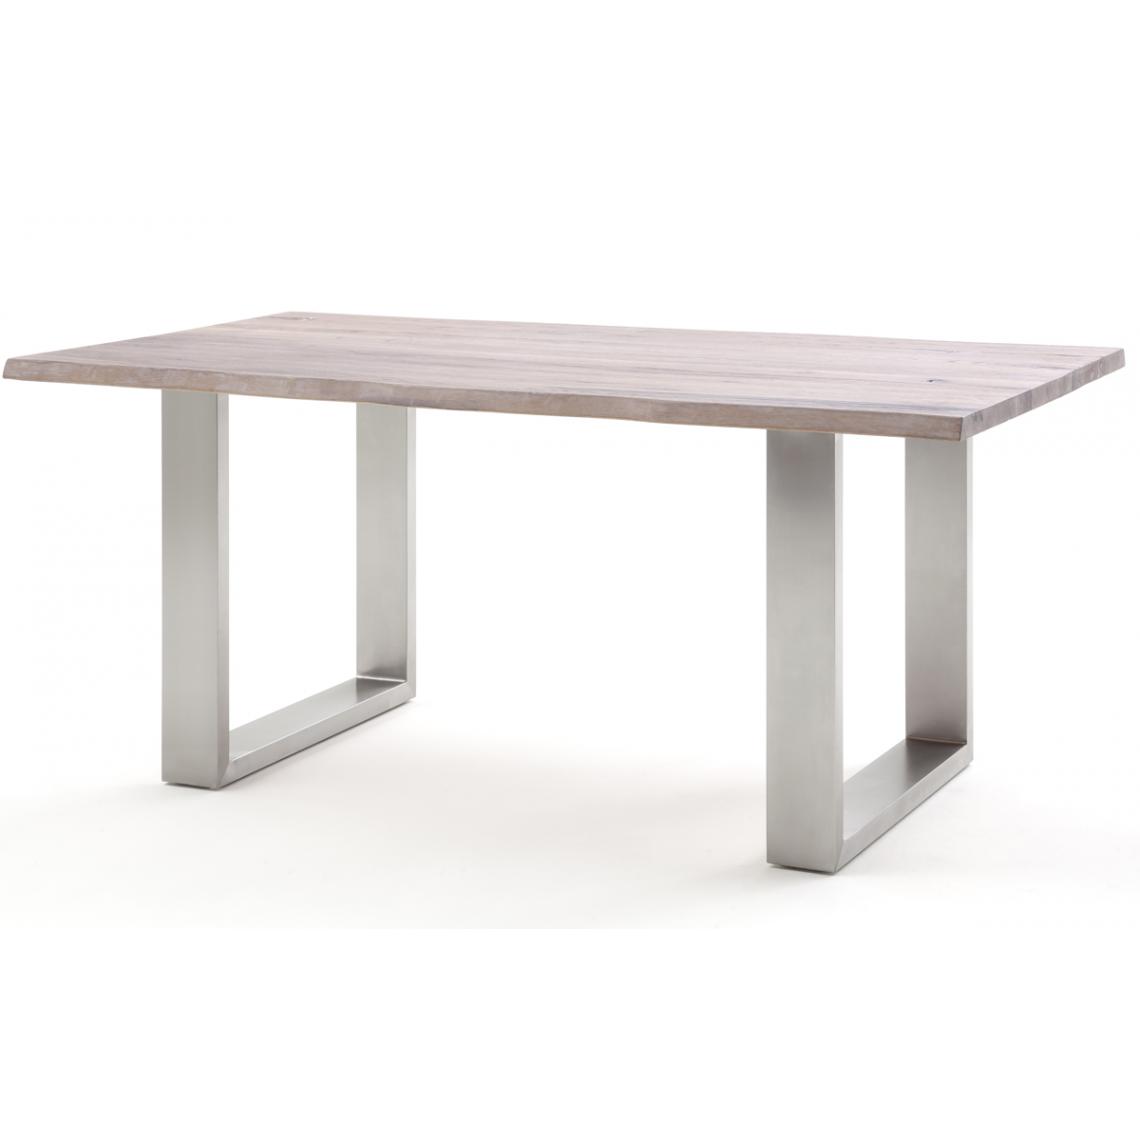 Pegane - Table à manger / table diner en chêne massif teinte chaulé - L.220 x H.77 x P.100 cm -PEGANE- - Tables à manger